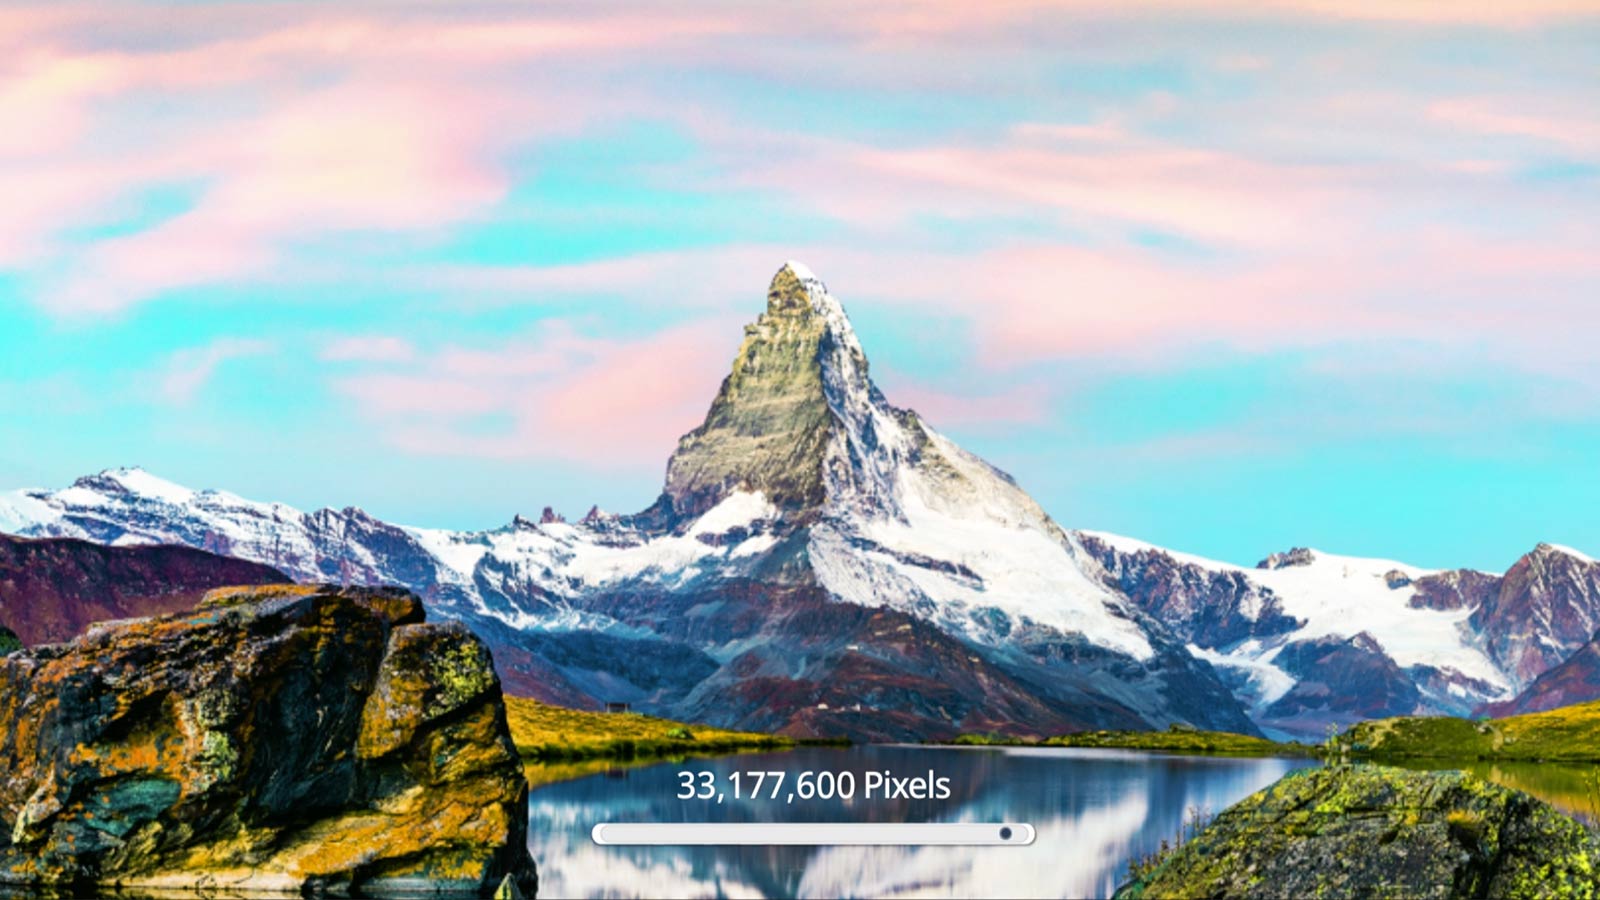 Egy hegyet ábrázoló jelenet mutatja be a képminőség javulását, ahogy a képpontok száma 33 177 600-ra, azaz 8K felbontásra nő (videó megtekintése).